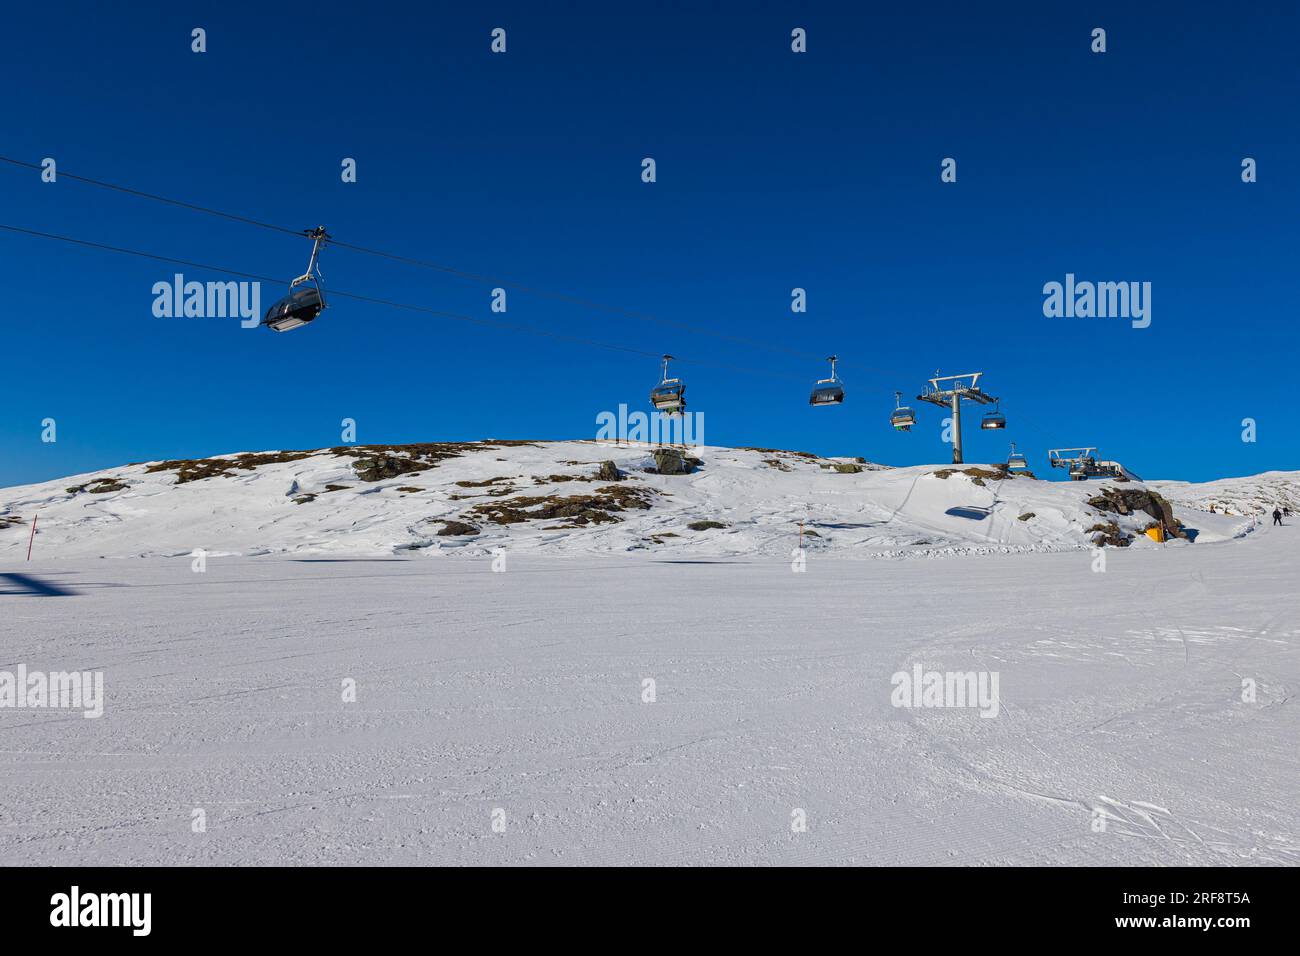 Atemberaubender Blick auf einen schneebedeckten Berg in den Dolomiten, mit Sessellift. Die majestätischen Gipfel ragen in der Ferne und sind mit Schnee überdeckt. Steigt auf Stockfoto